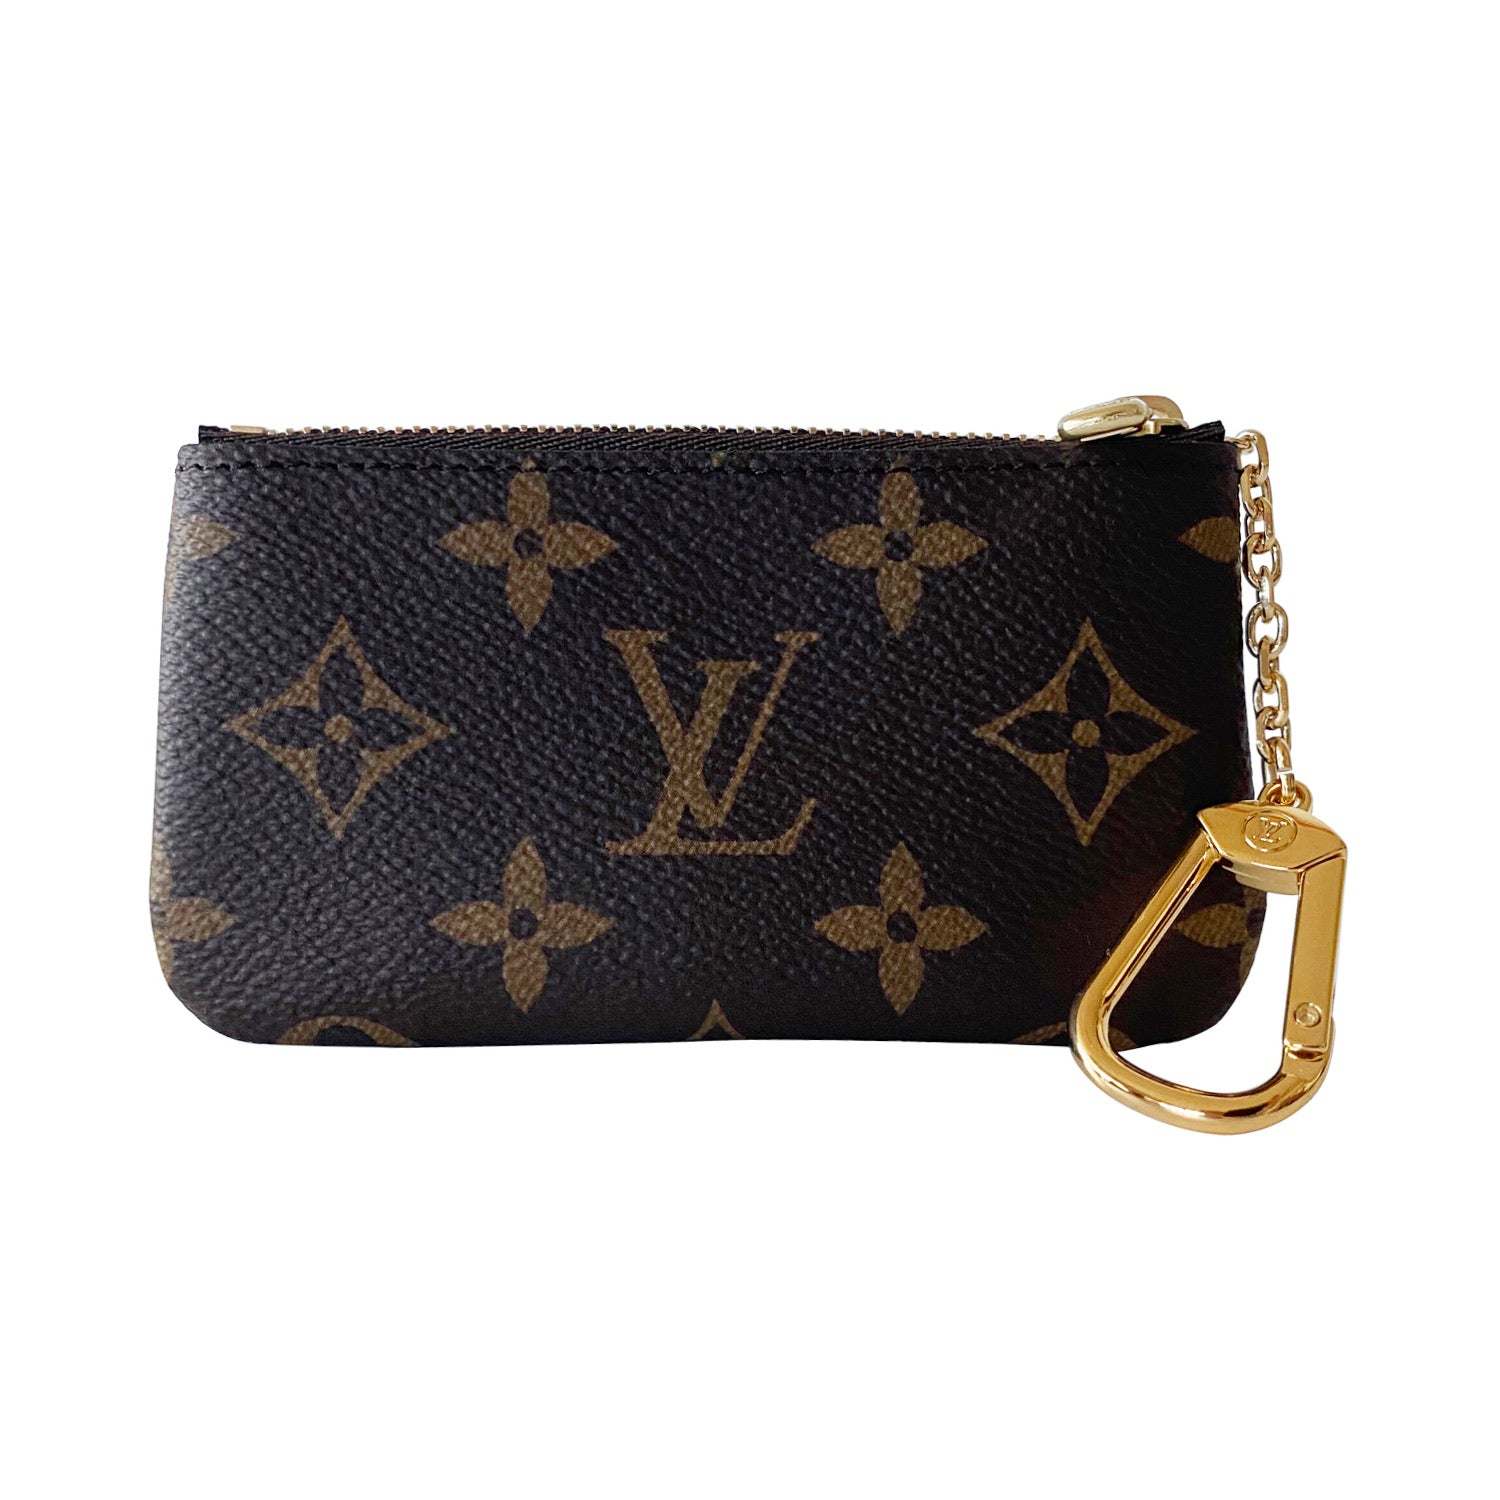 Shop authentic Louis Vuitton Monogram Key Pouch at revogue for